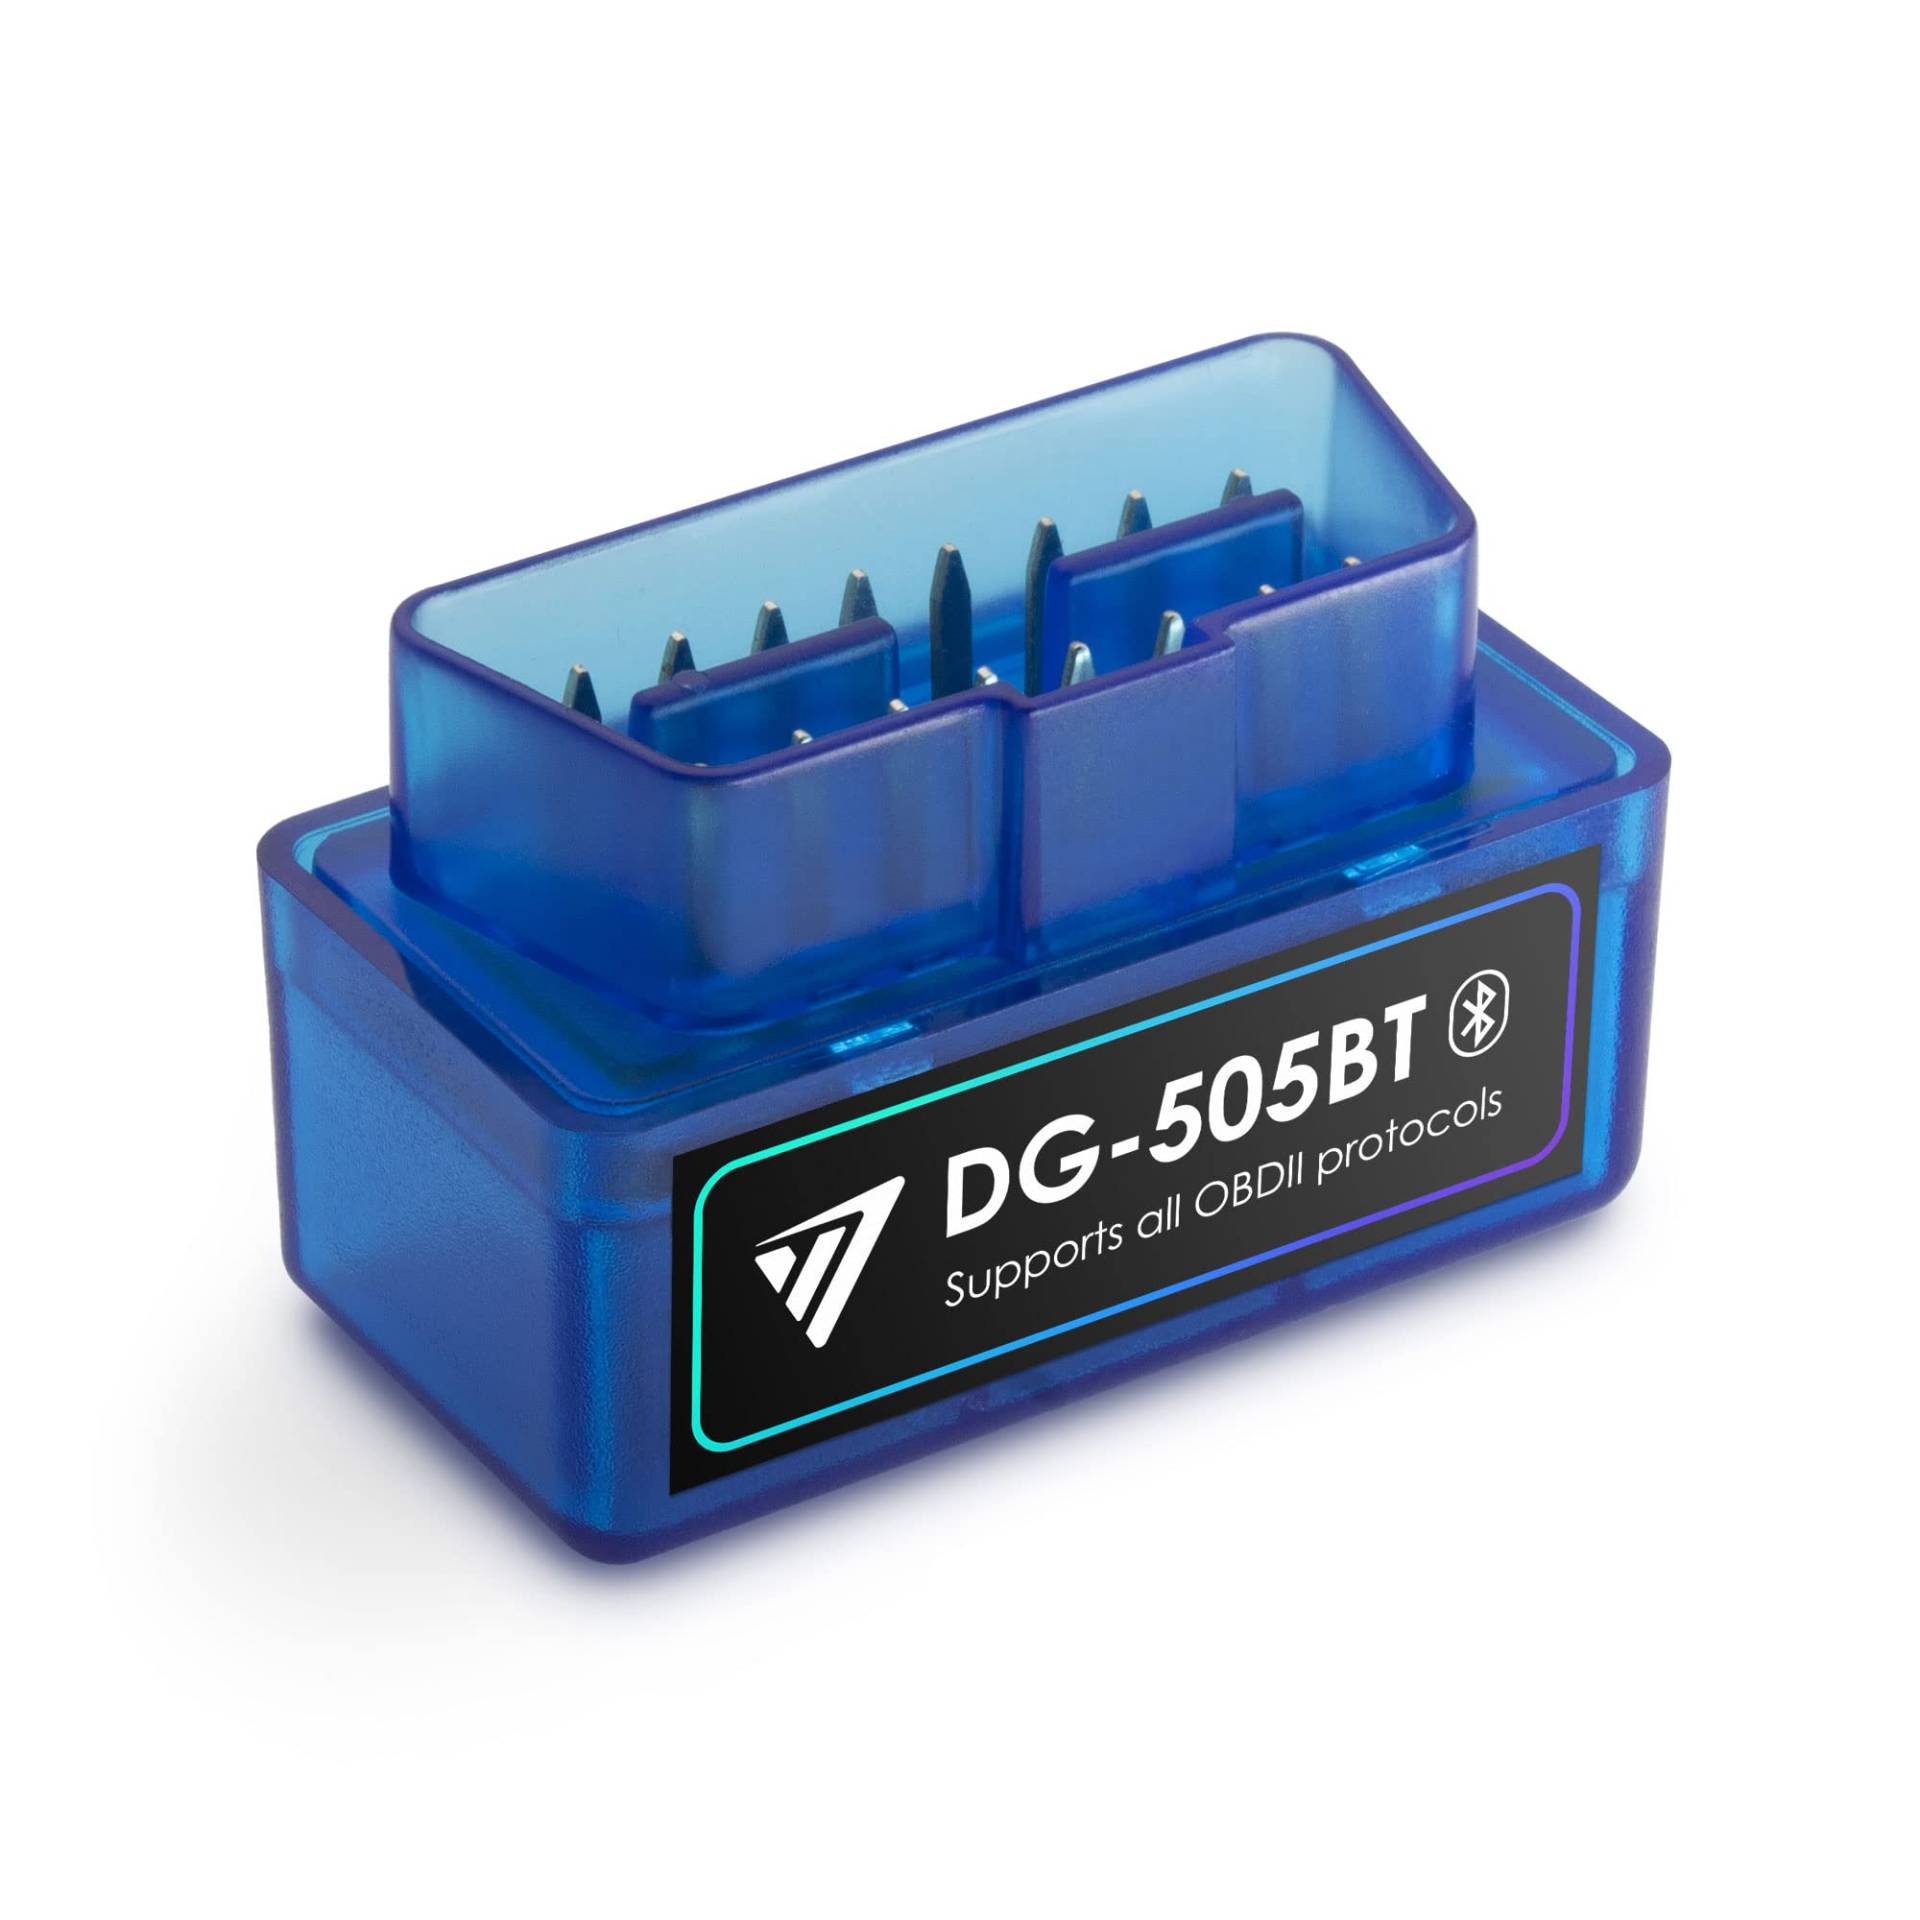 Valtron DG-505BT OBD II Diagnosewerkzeug | Bluetooth Adapter | OBD2 Diagnosegerät | Check Engine Code Reader | Plug & Play | Kompatibel mit Android und Windows von VALTRON